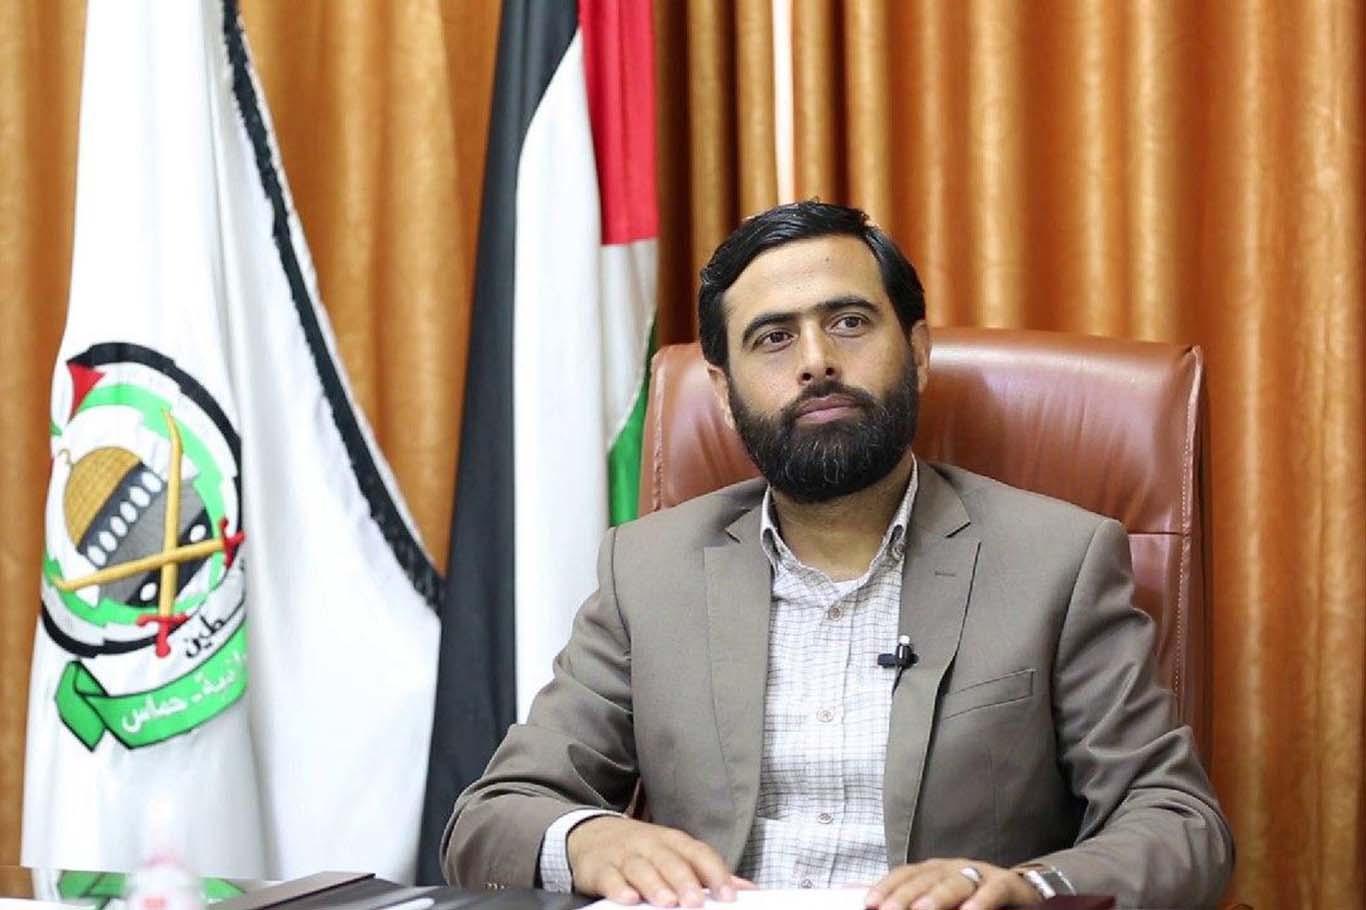 Hamas Sözcüsü El Mısri: "Direnişten başka yol yok diğer yollar işgalcileri cüretkâr kıldı"